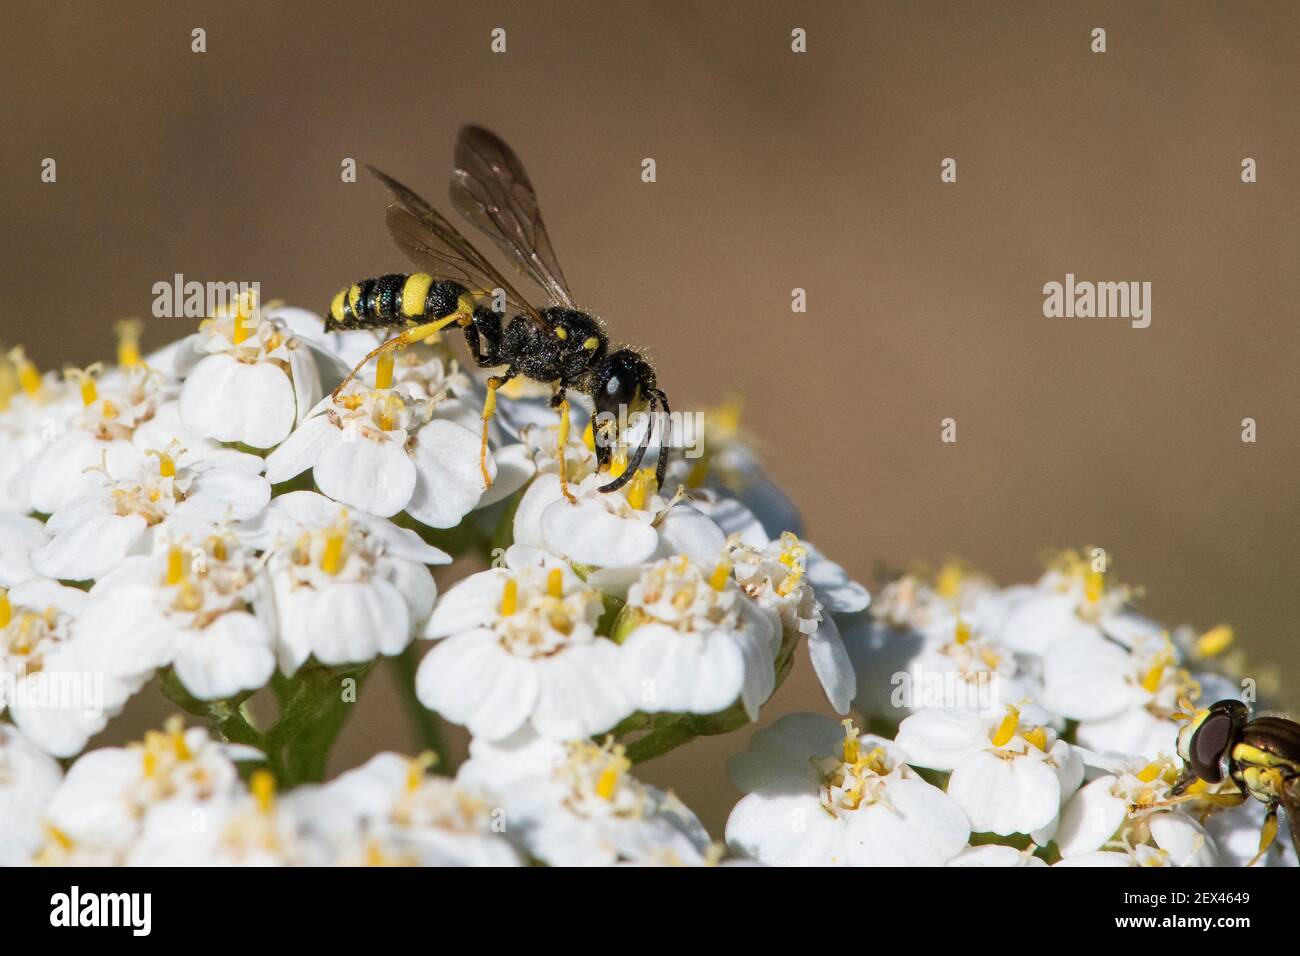 Digger wasp (Cerceris sp) on Milfoil (Achillea millefolium), Lorraine, France Stock Photo